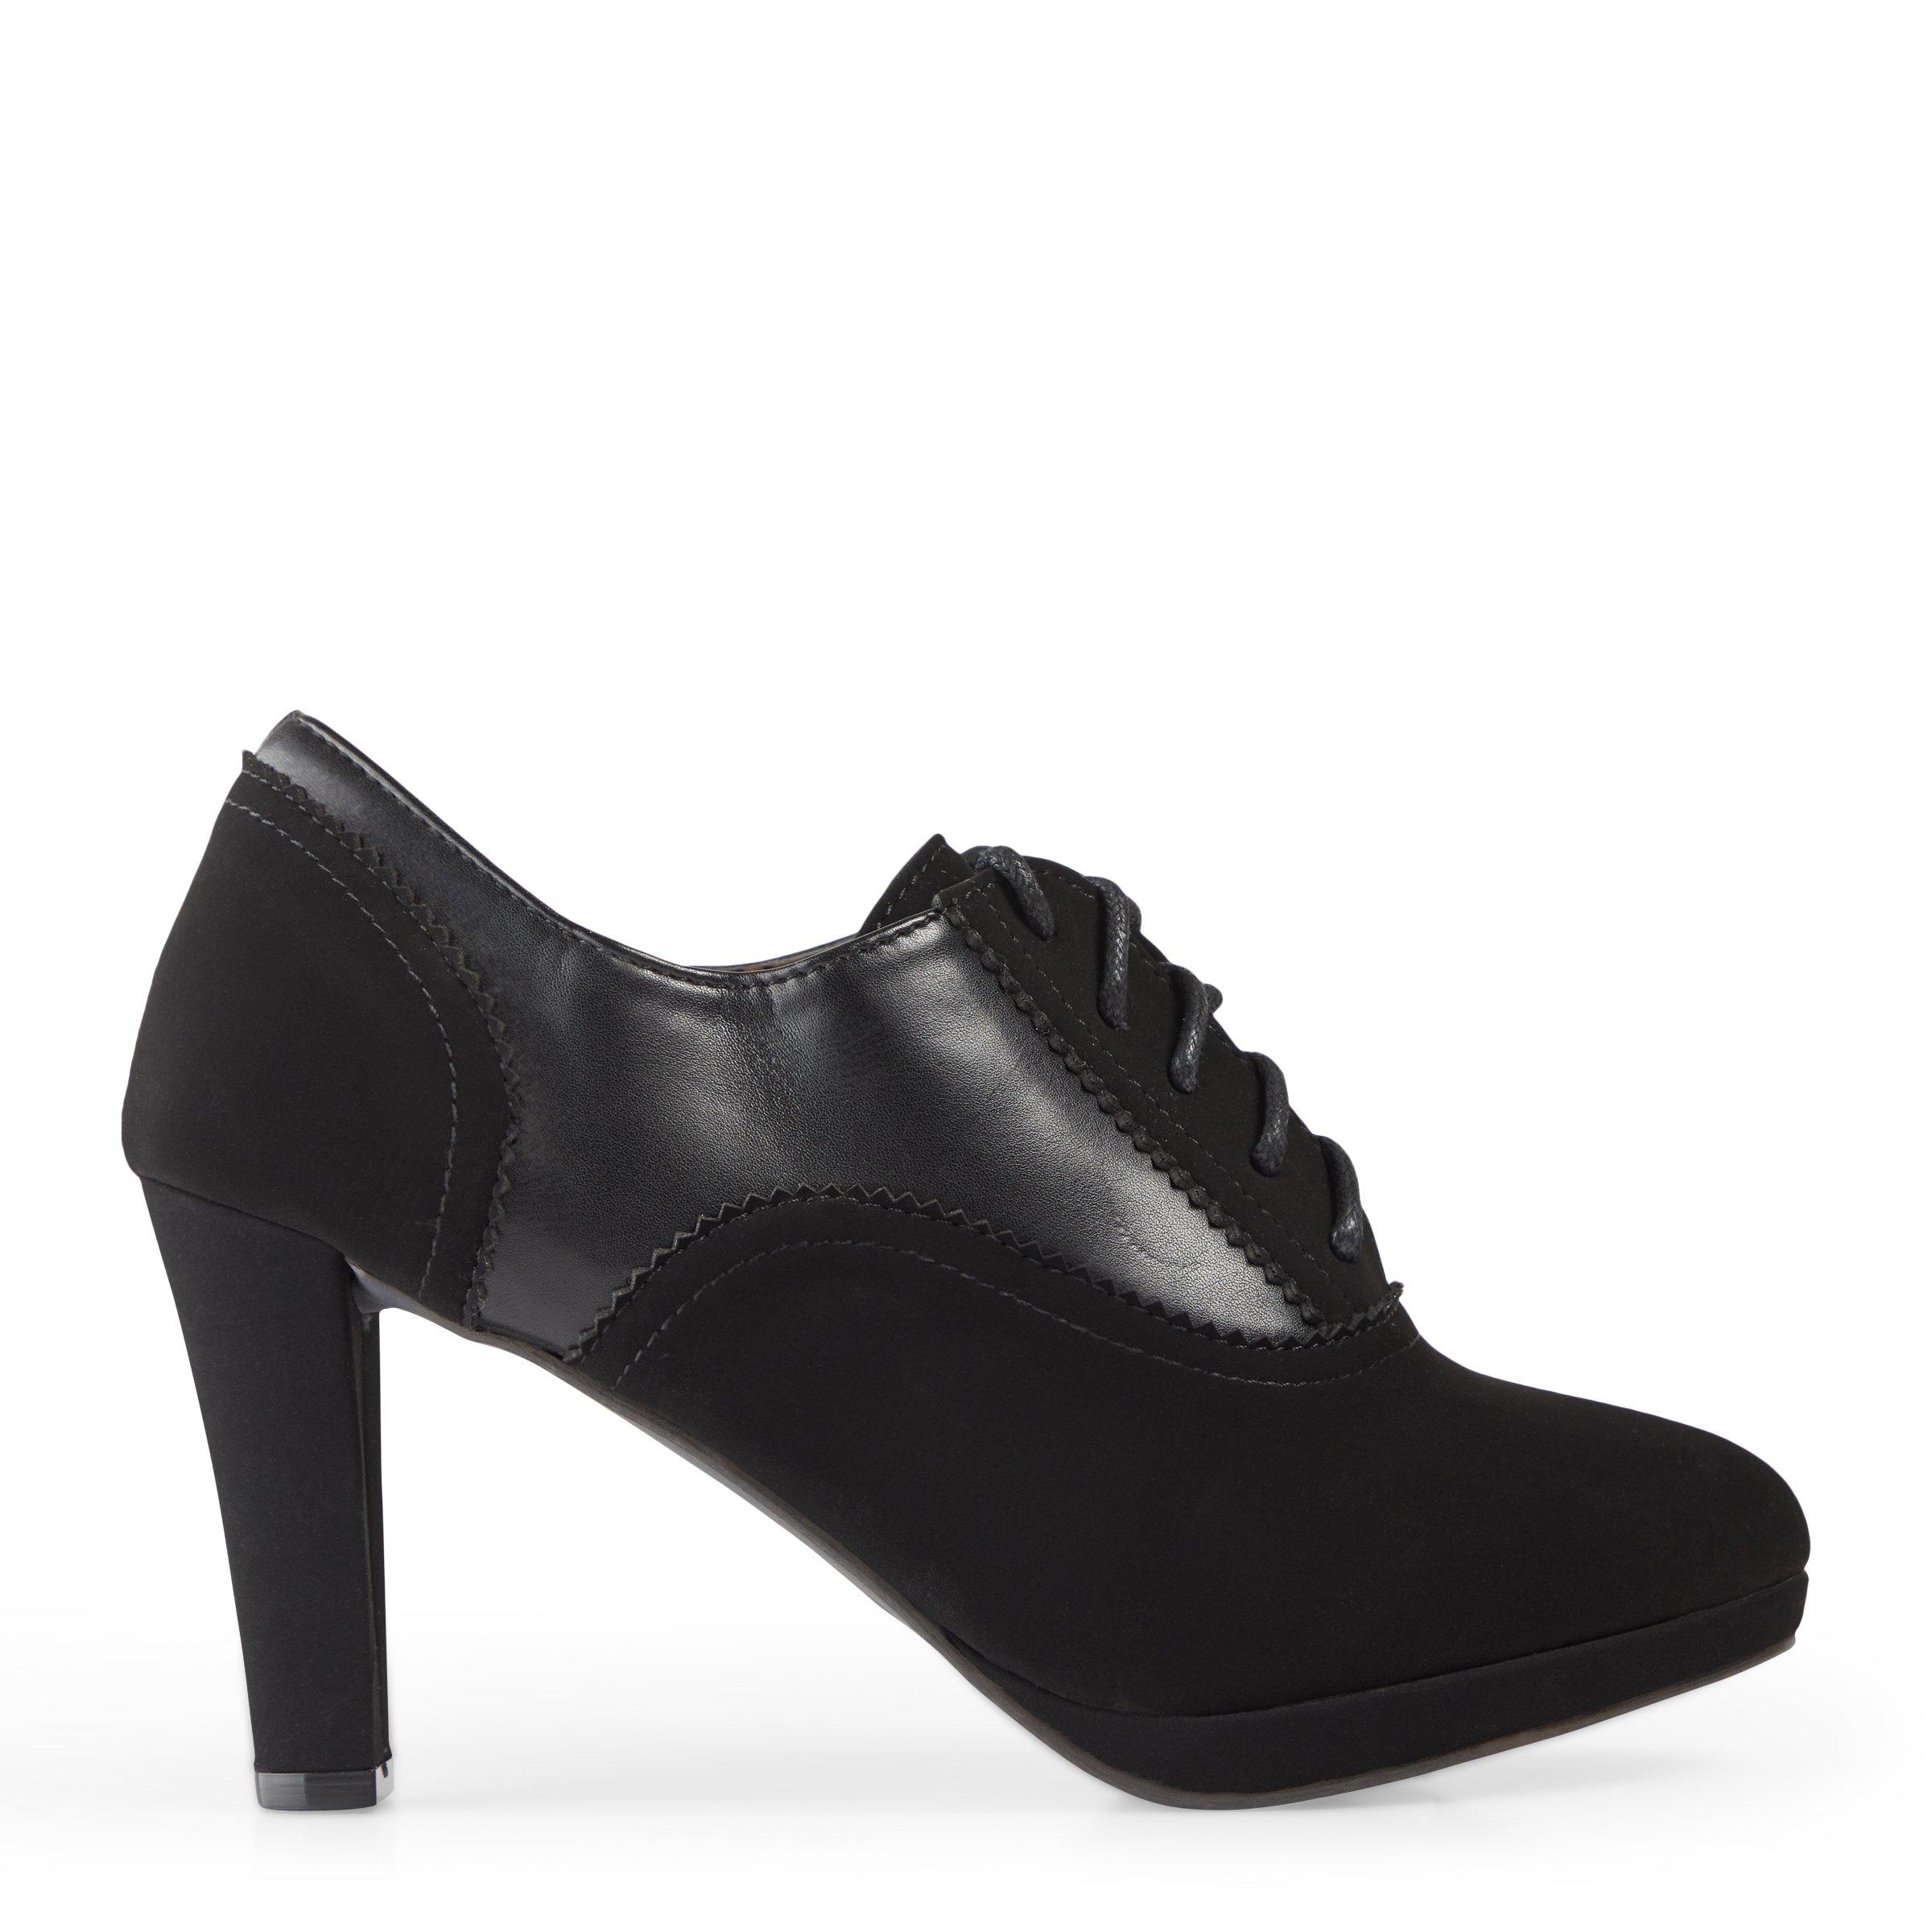 Buy Truworths Black Oxford Heels Online | Truworths